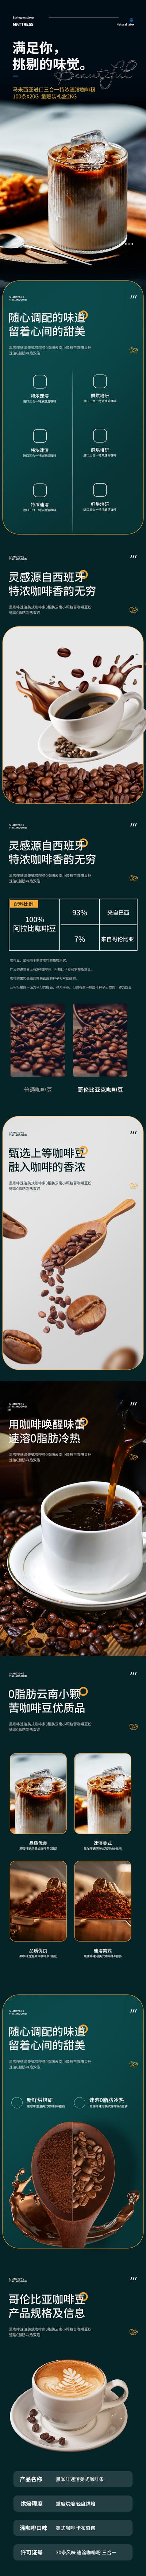 南门网 广告 海报 电商 咖啡 详情页 品质 清新